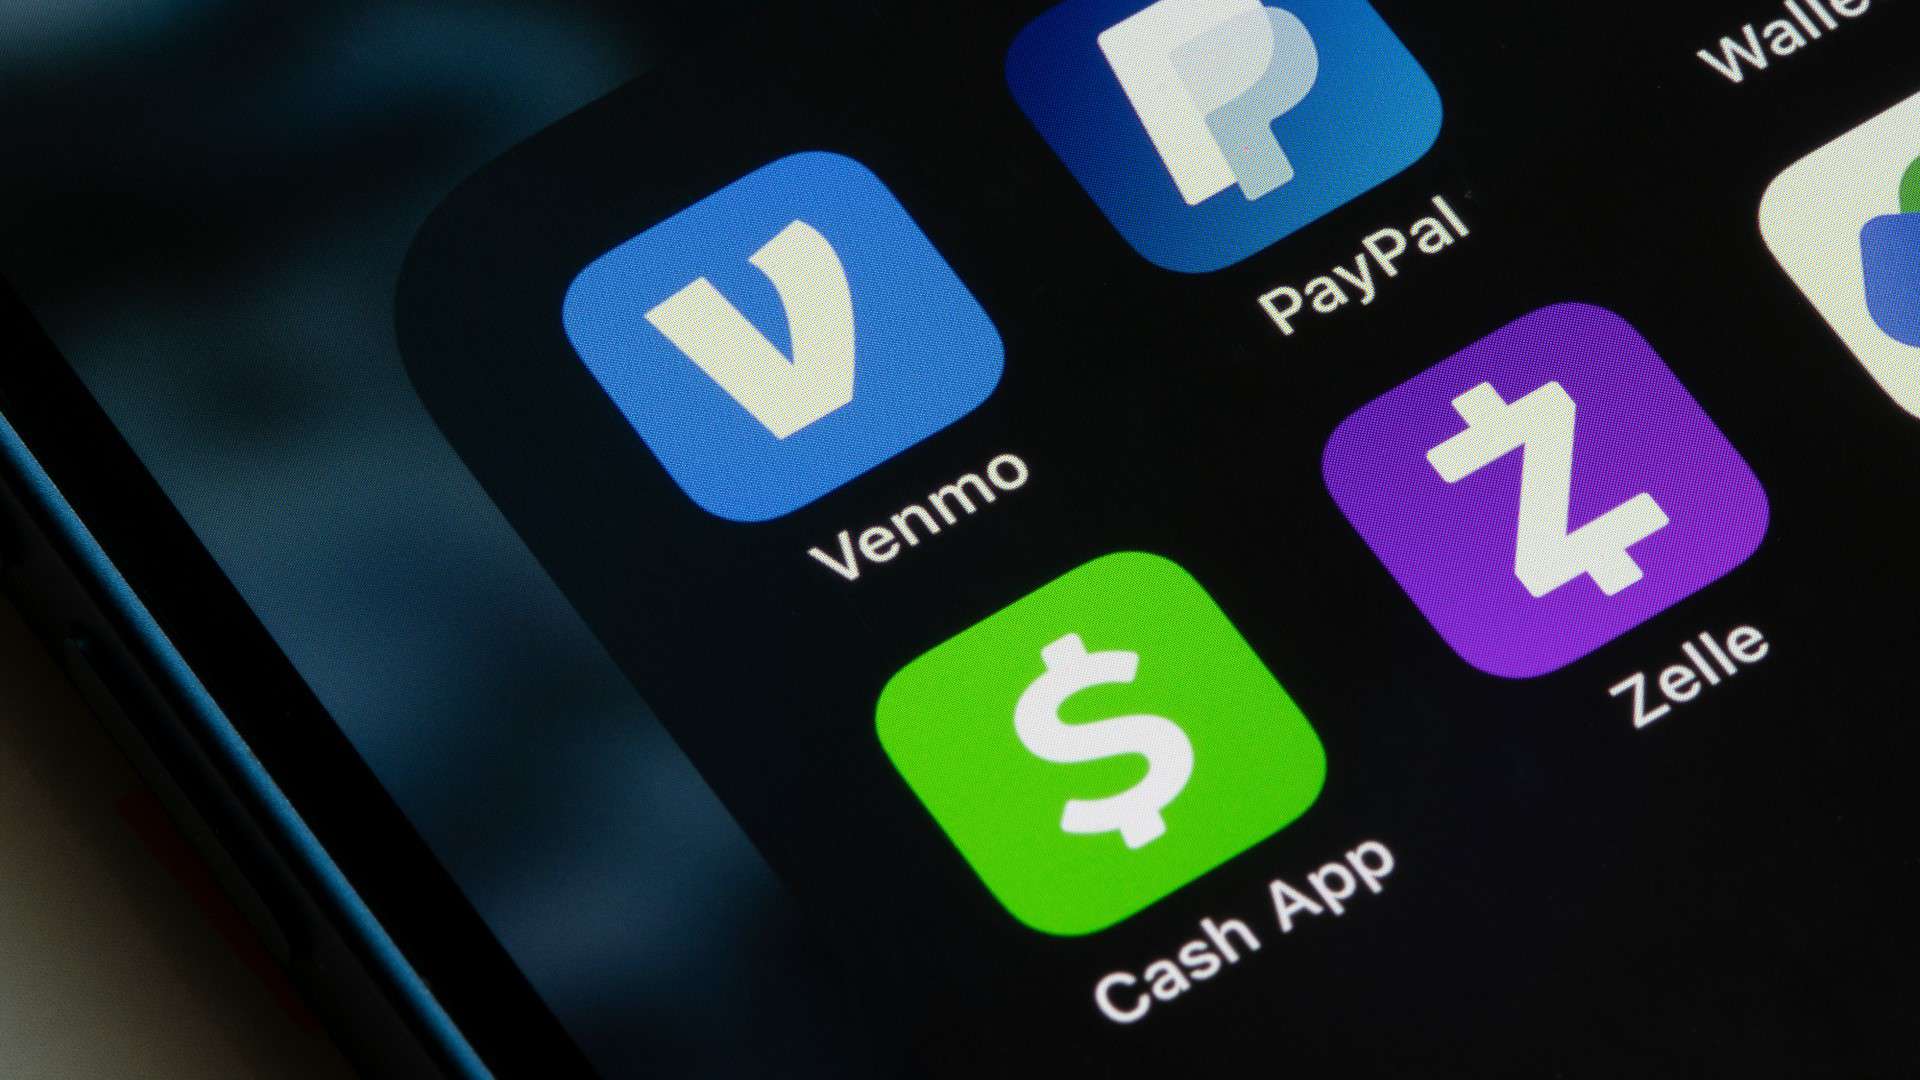 Venmo/Cash App